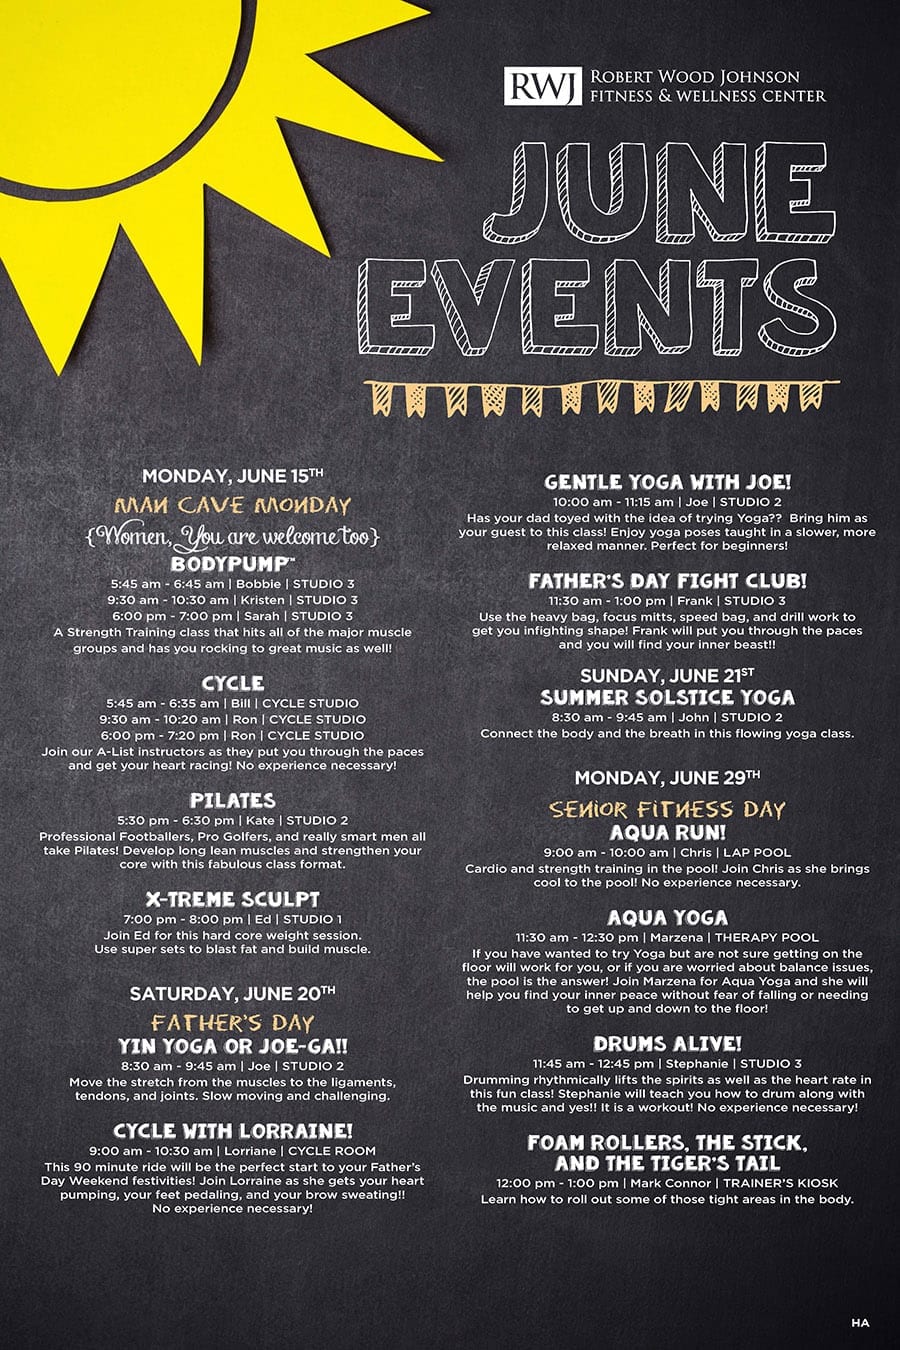 Hamilton June 2015 Events